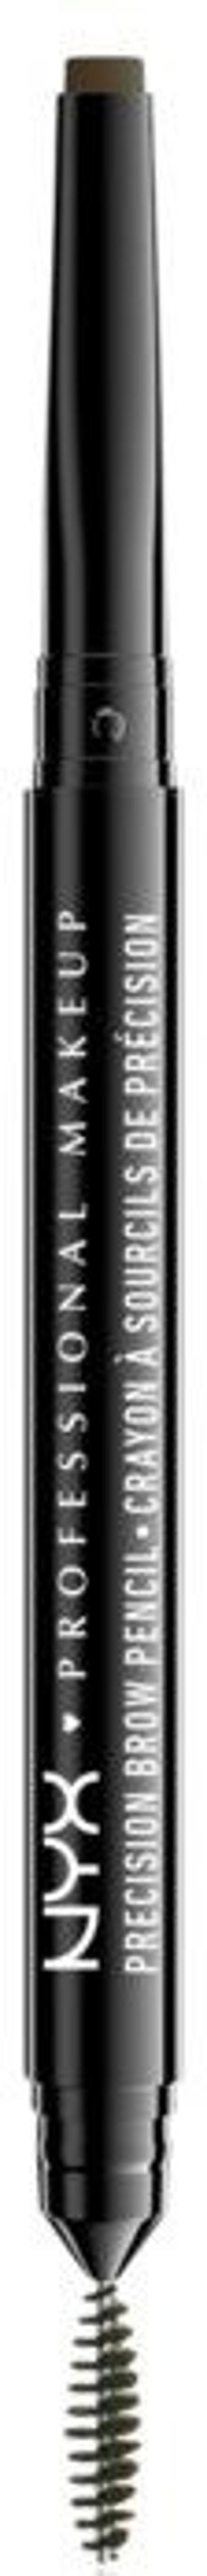 NYX Professional Makeup Precision Brow Pencil - Oboustranná tužka na obočí - Espresso 0.13 g